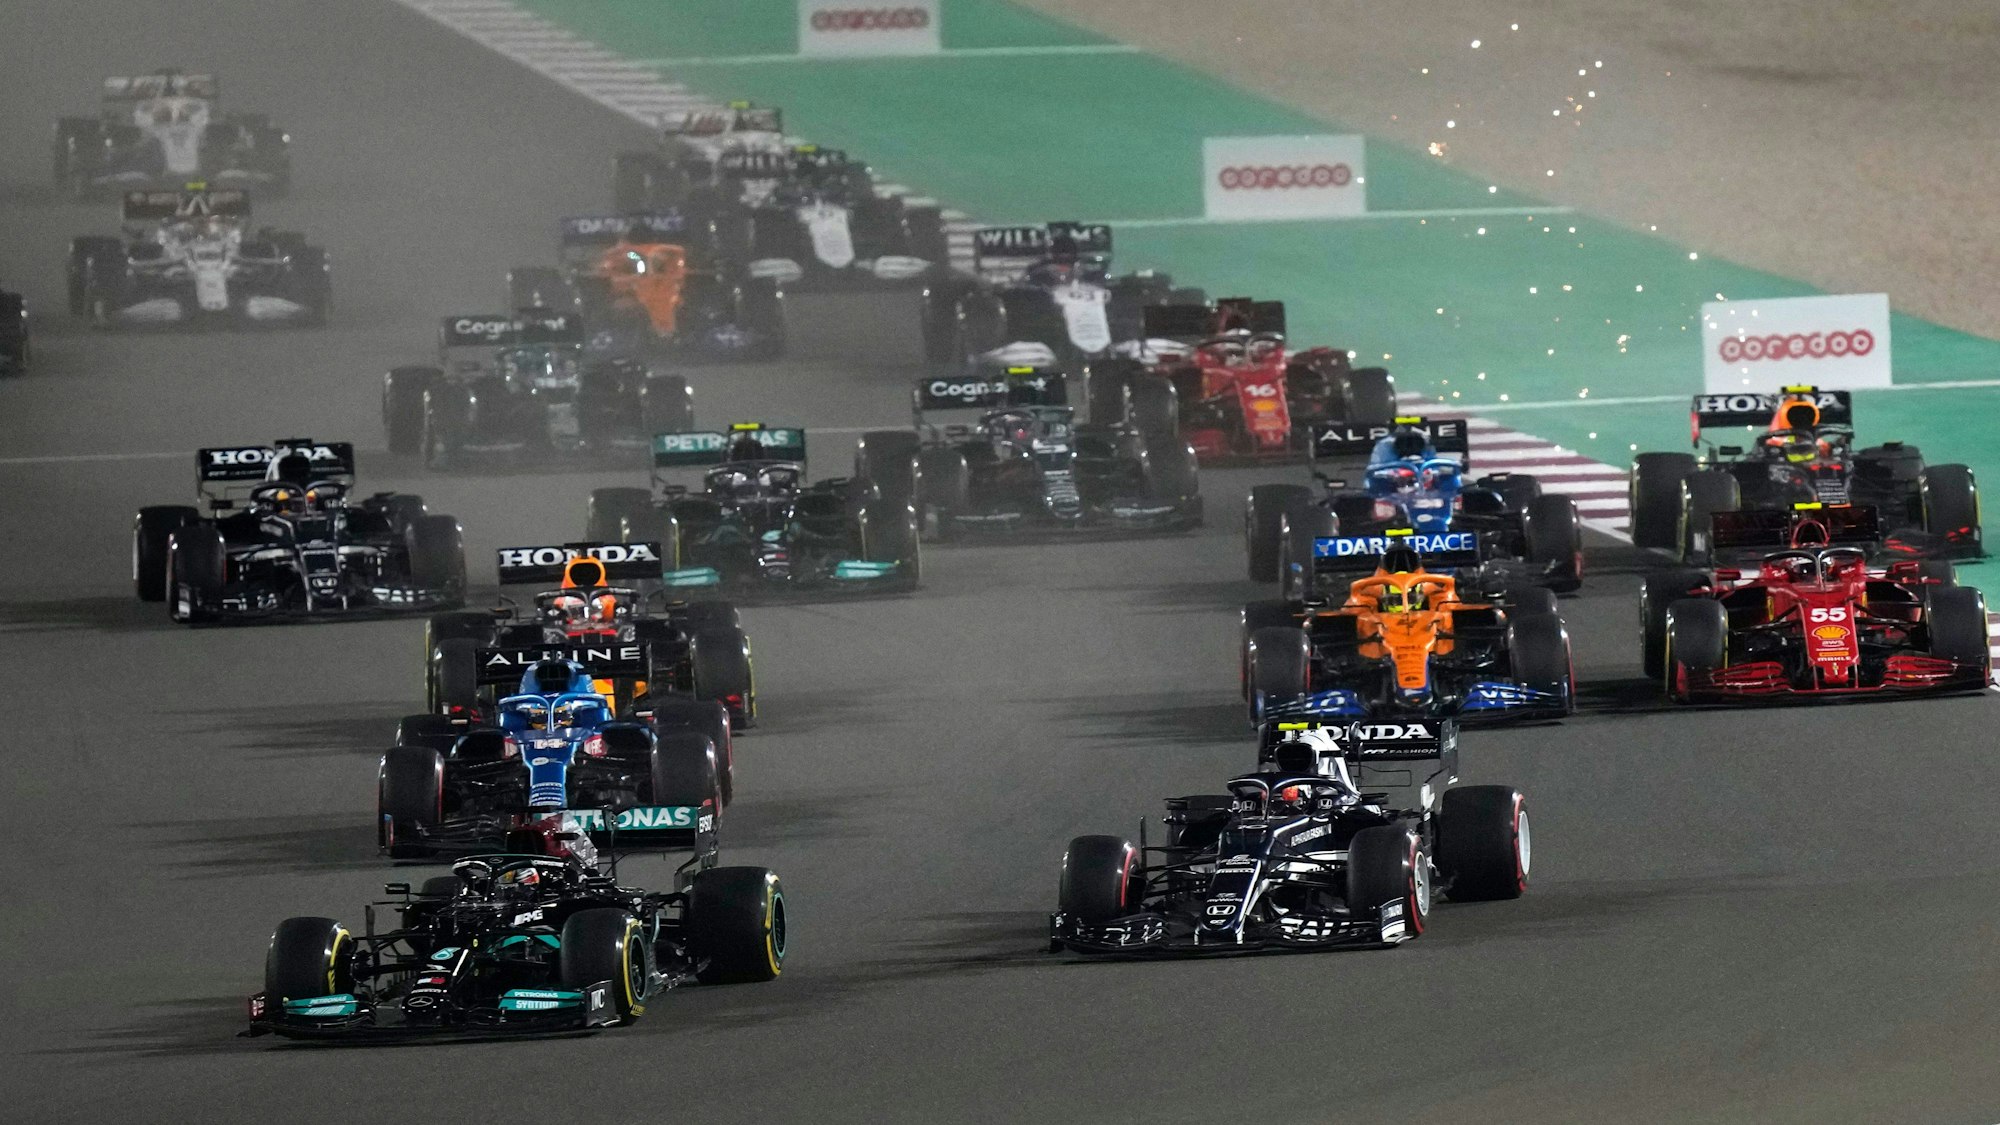 Der britische Mercedes-Pilot Lewis Hamilton führt beim Start des Rennens.